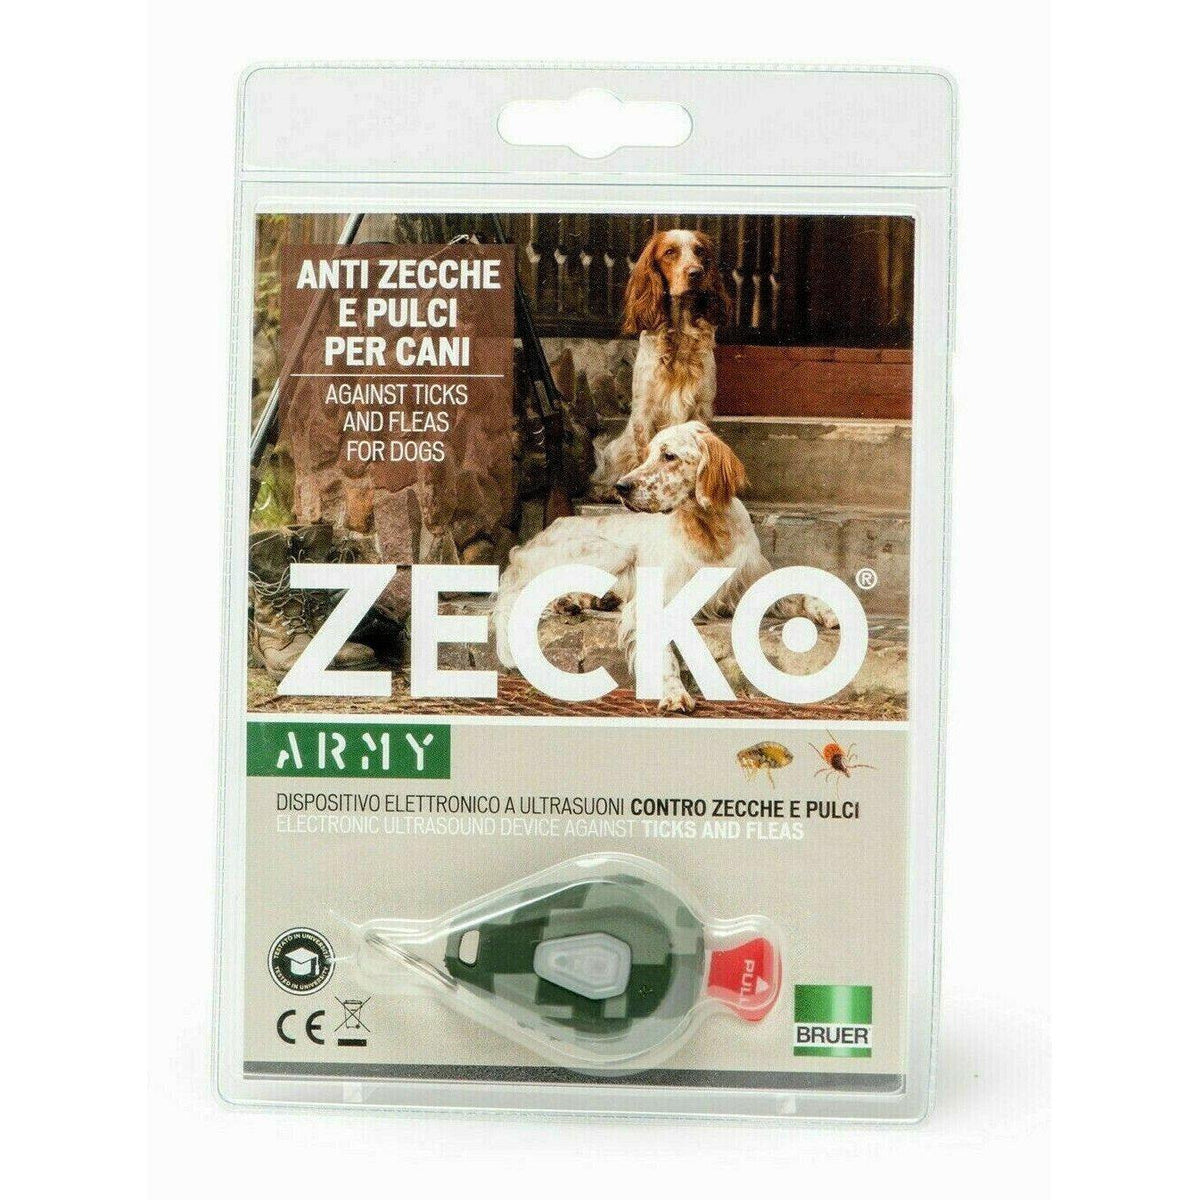 Zecko Antiparassitario elettronico per cani e gatti collare anti zecche pulci atossico-Ecanshop